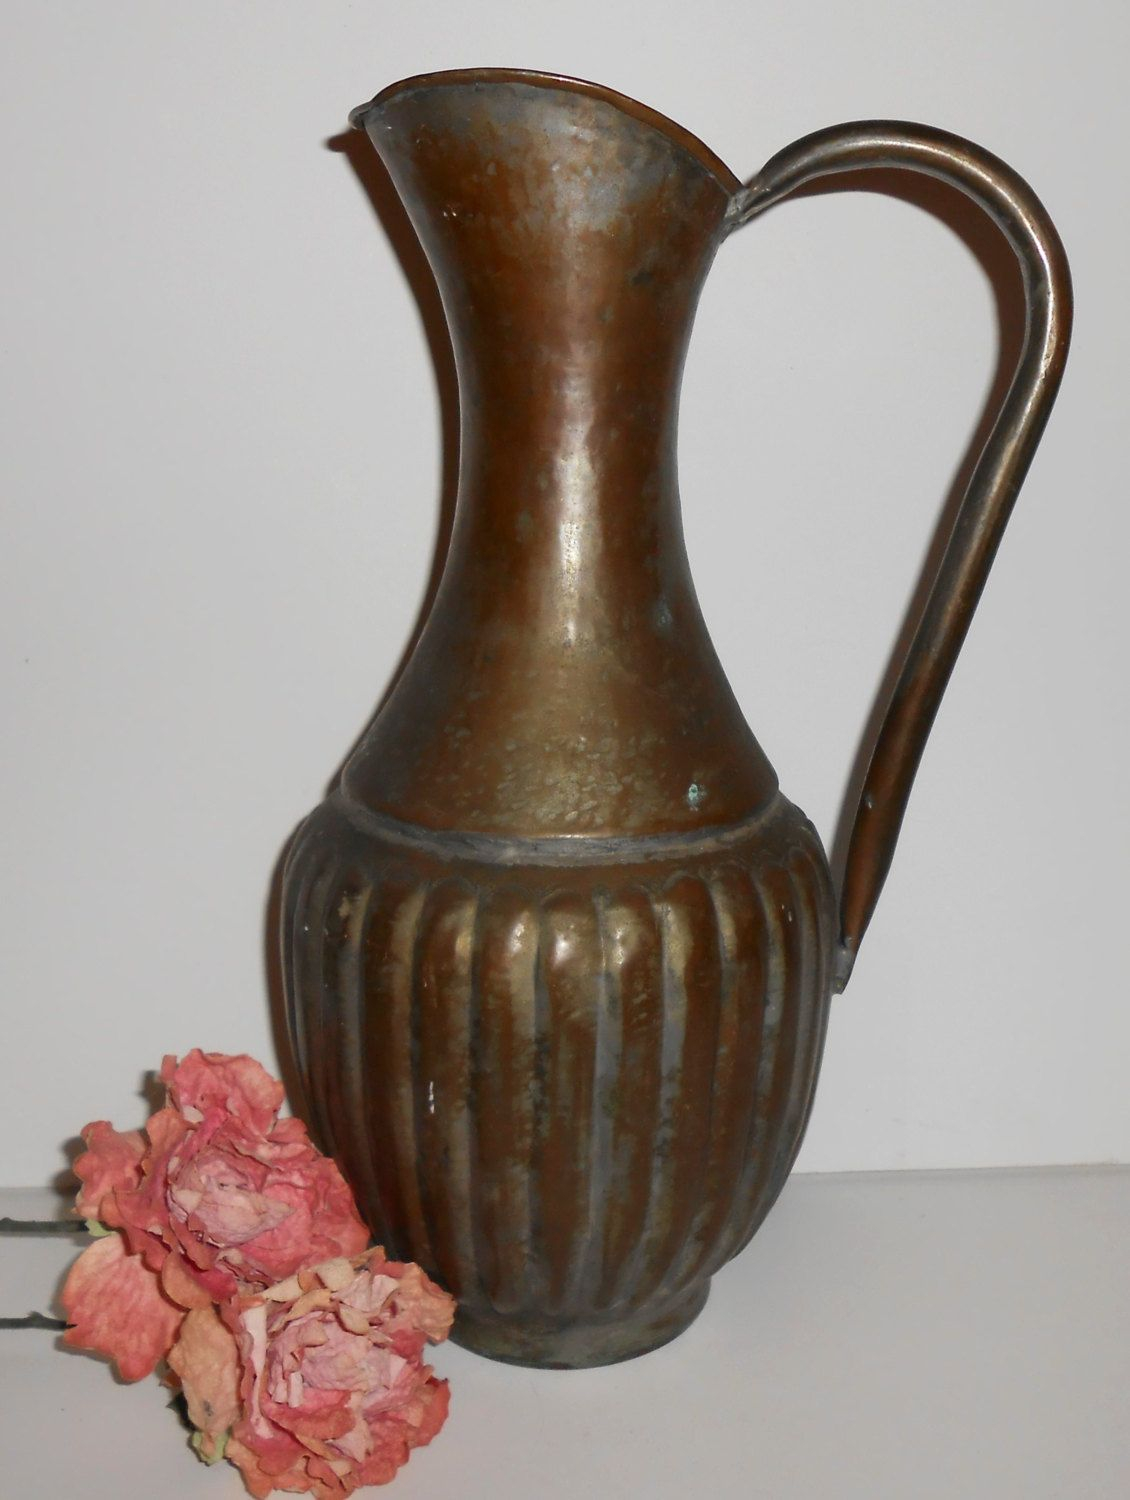 Antique brass water pitcher